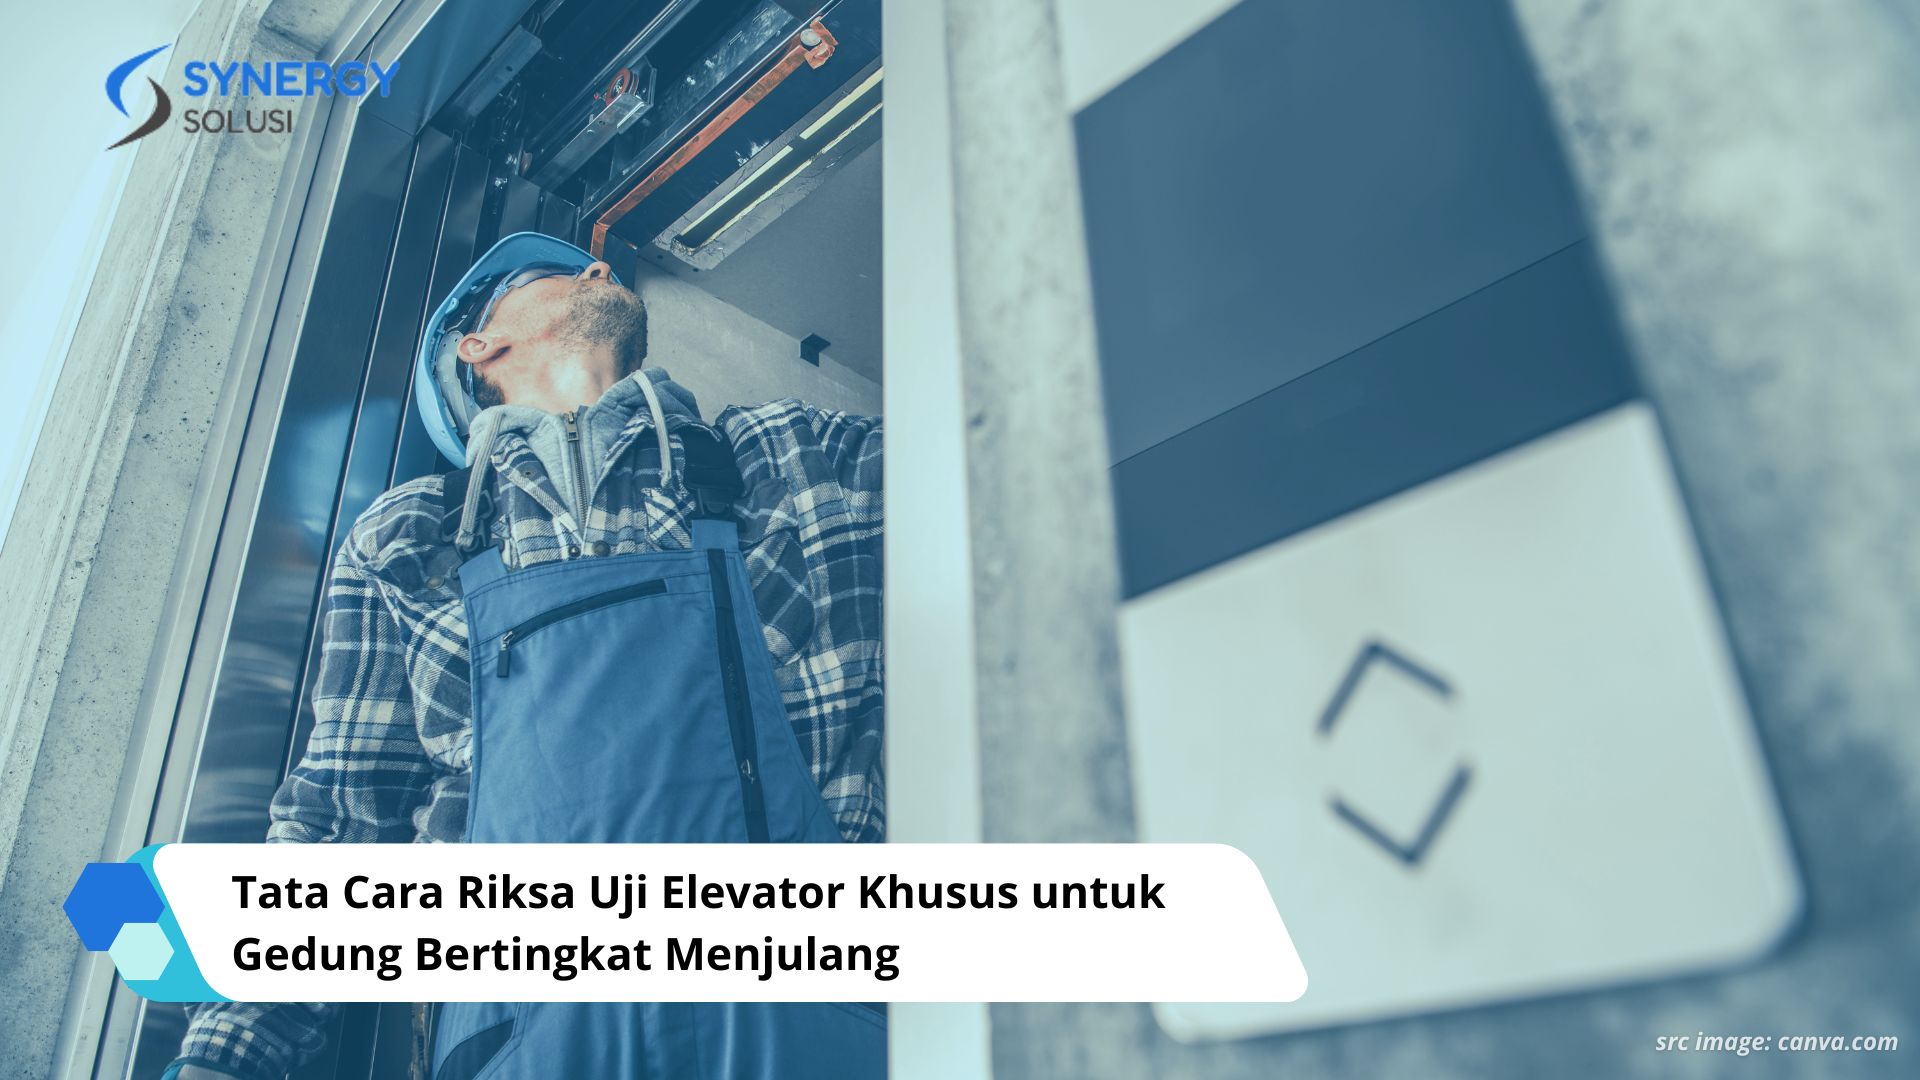 Tata Cara Riksa Uji Elevator Khusus untuk Gedung Bertingkat Menjulang